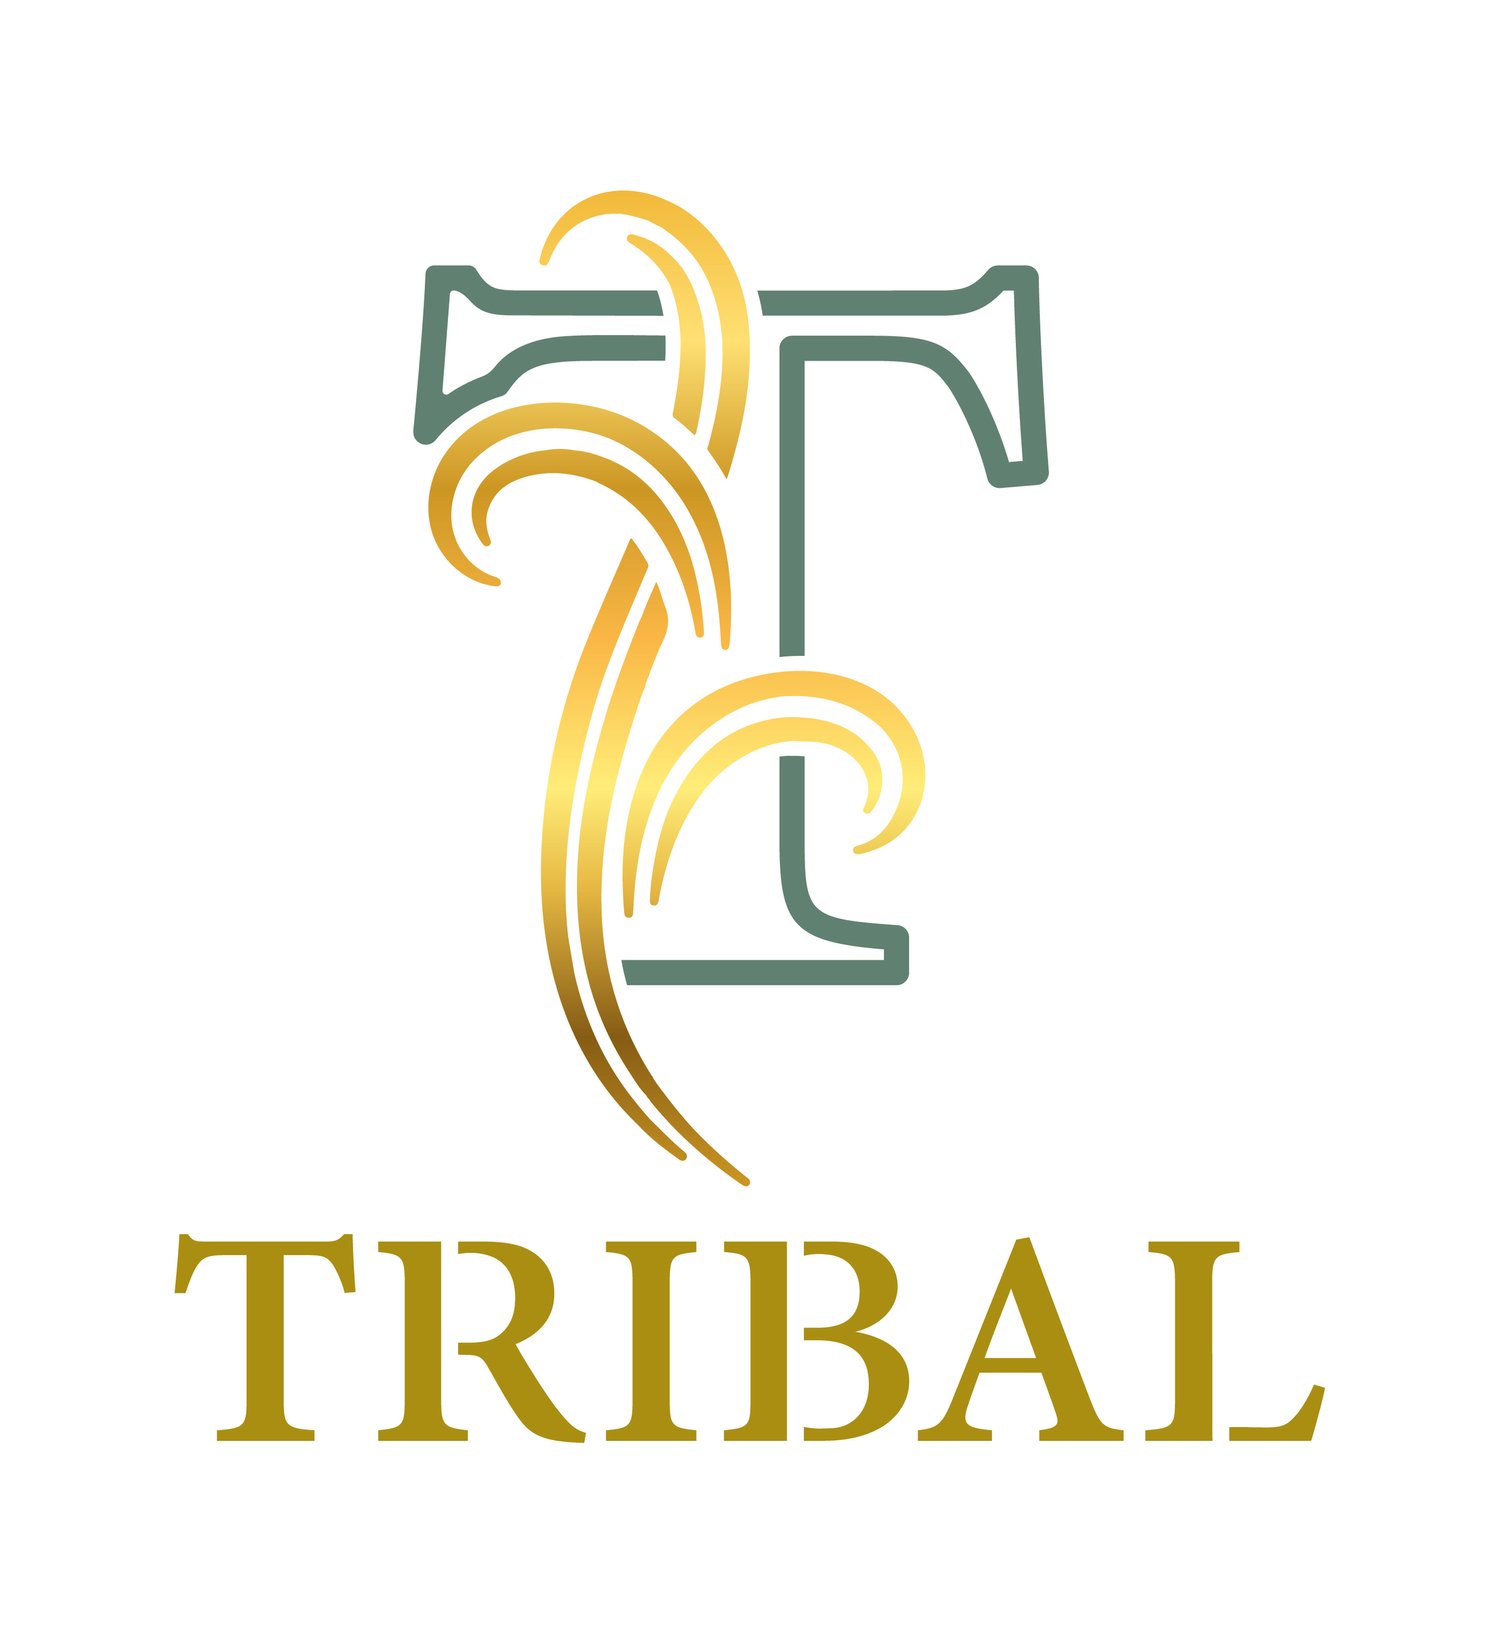 Tribal UK